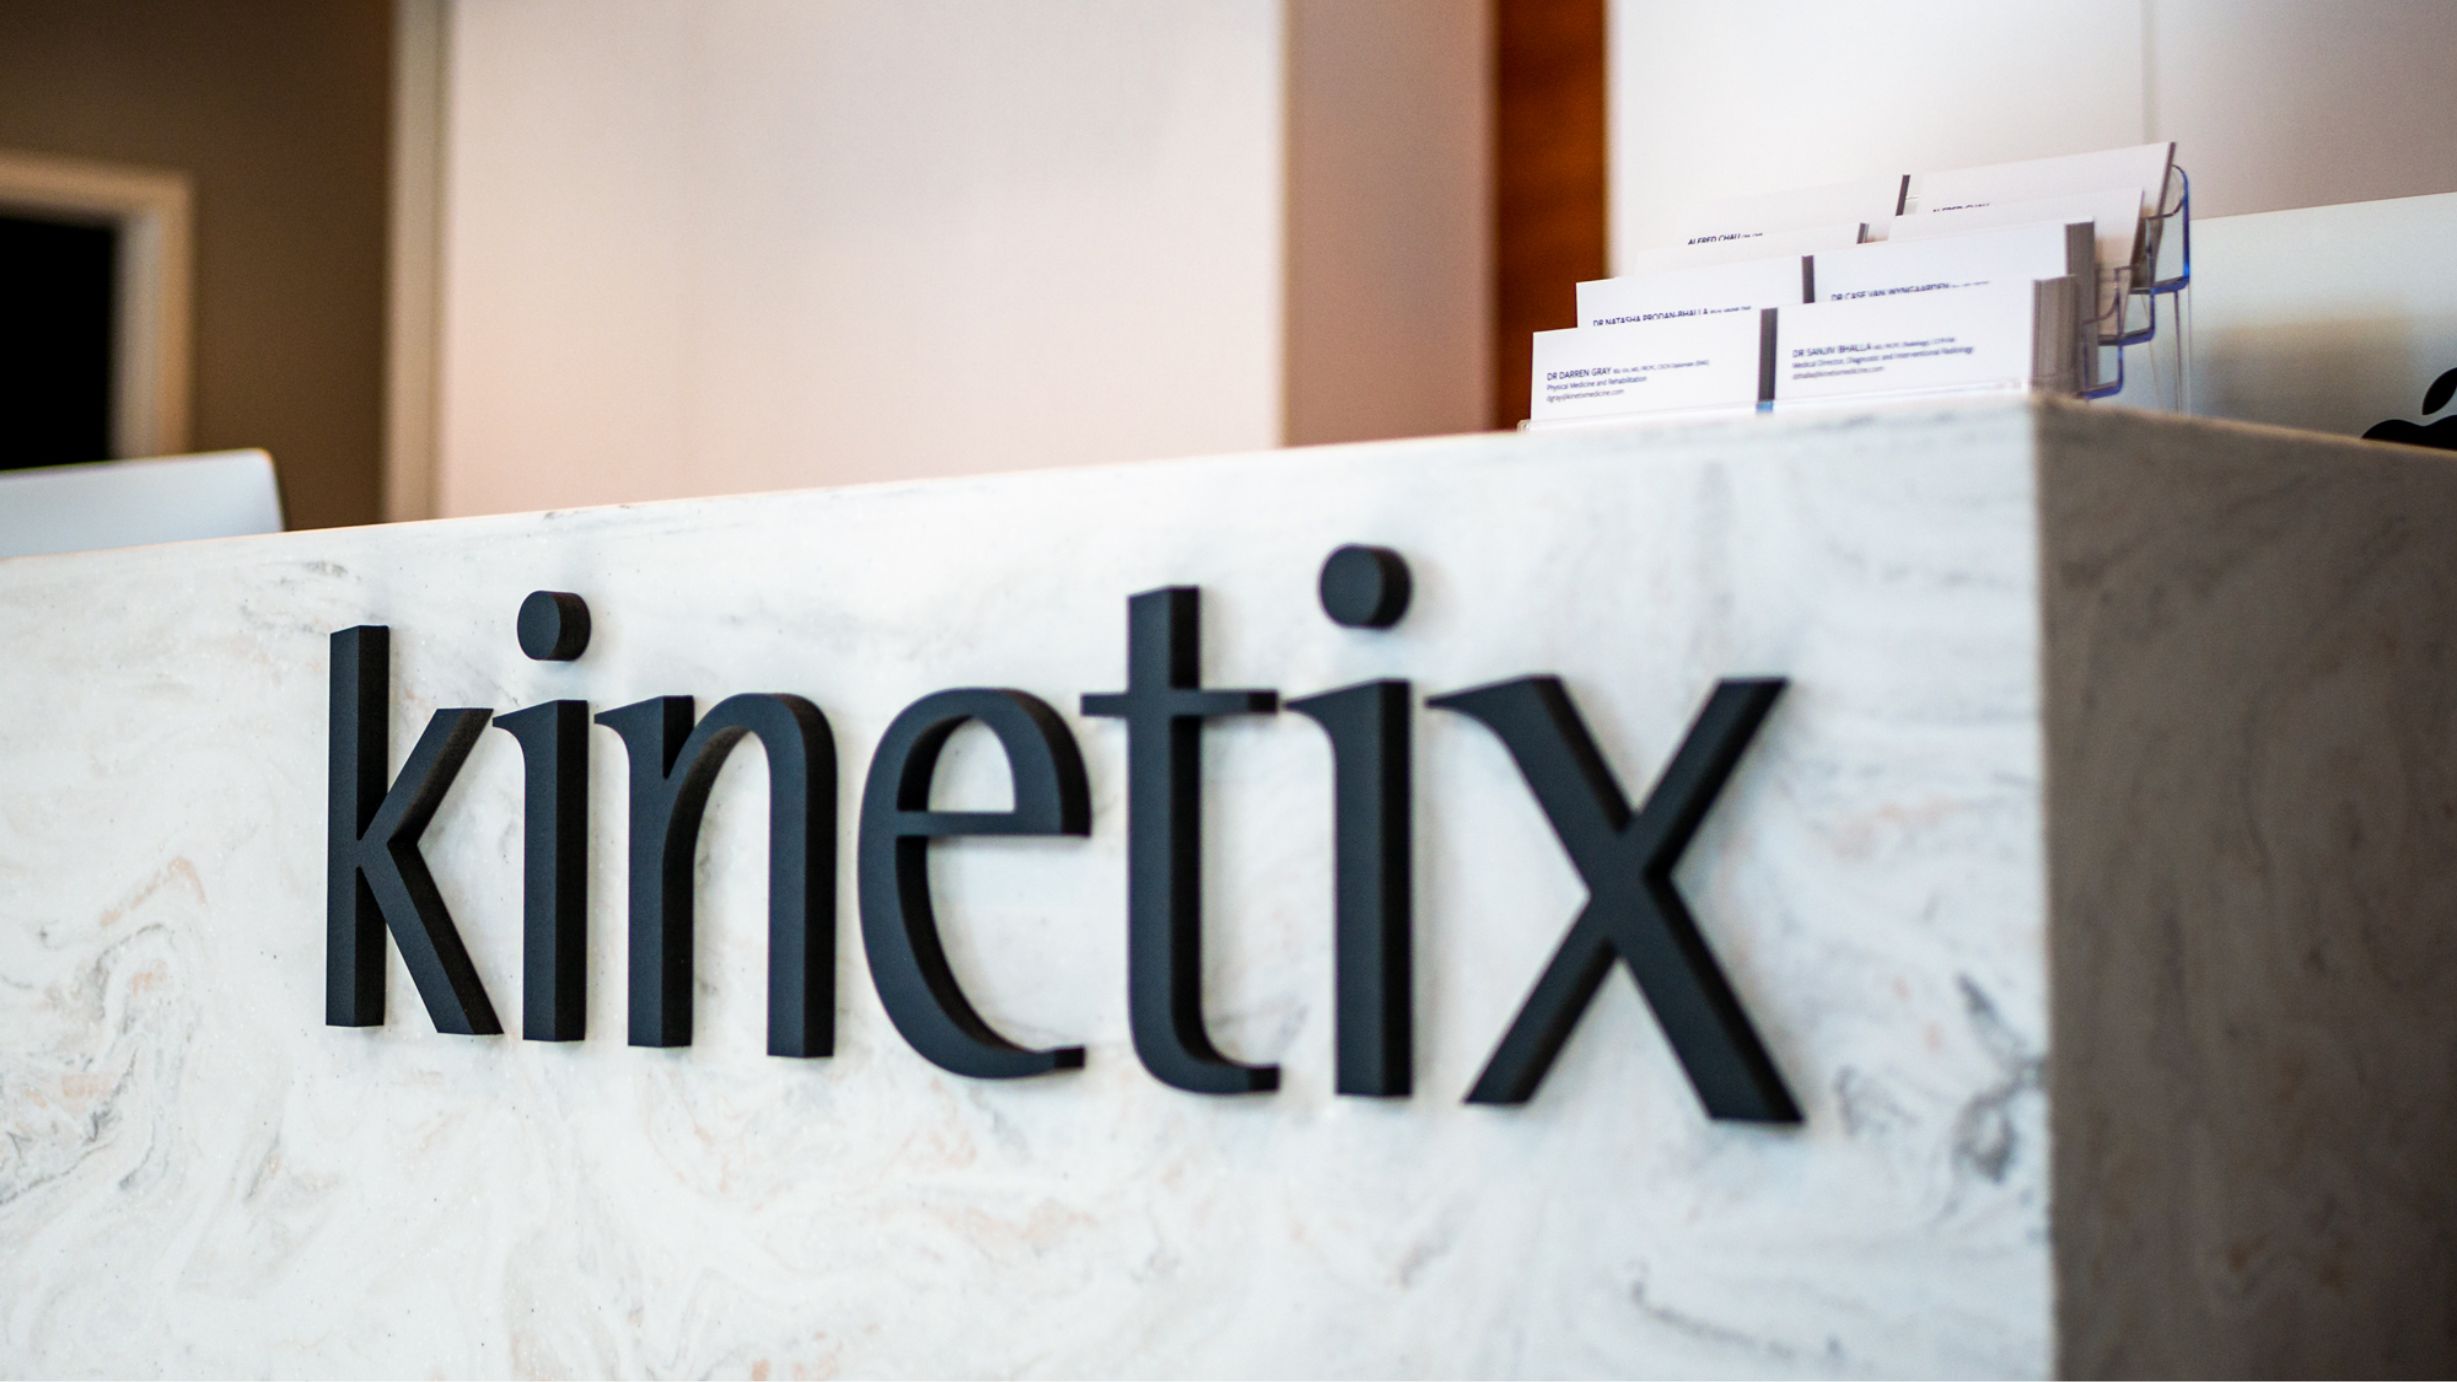 Kinetix: Integrated Orthopaedic Medicine Front Desk